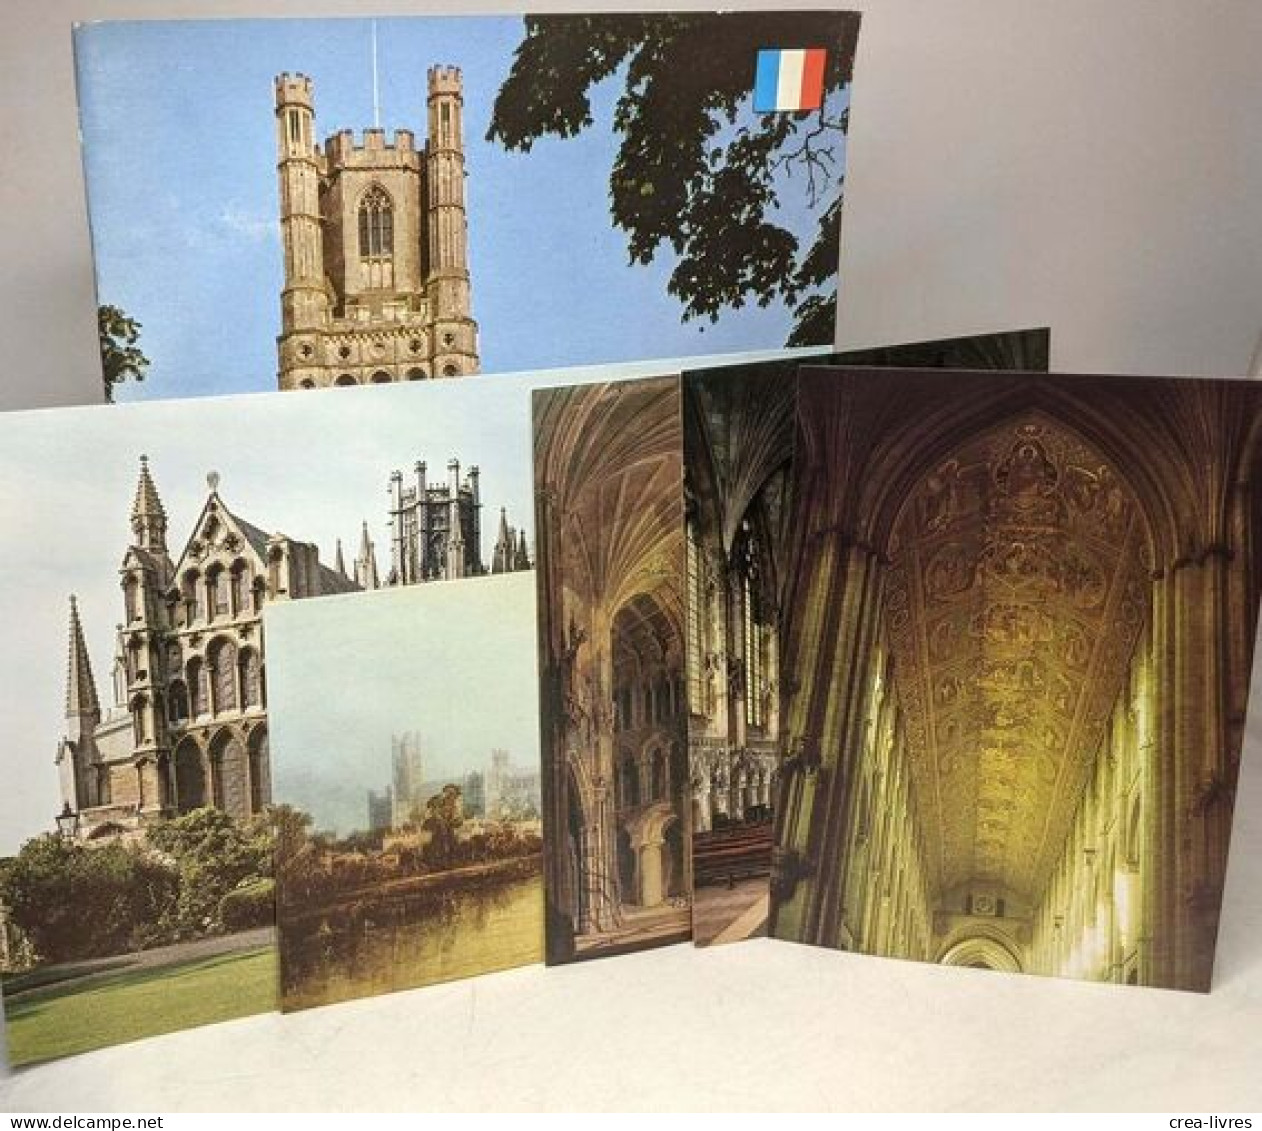 La Cathédrale D'Ely - Guide --- Avec Cartes Postales - Tourisme